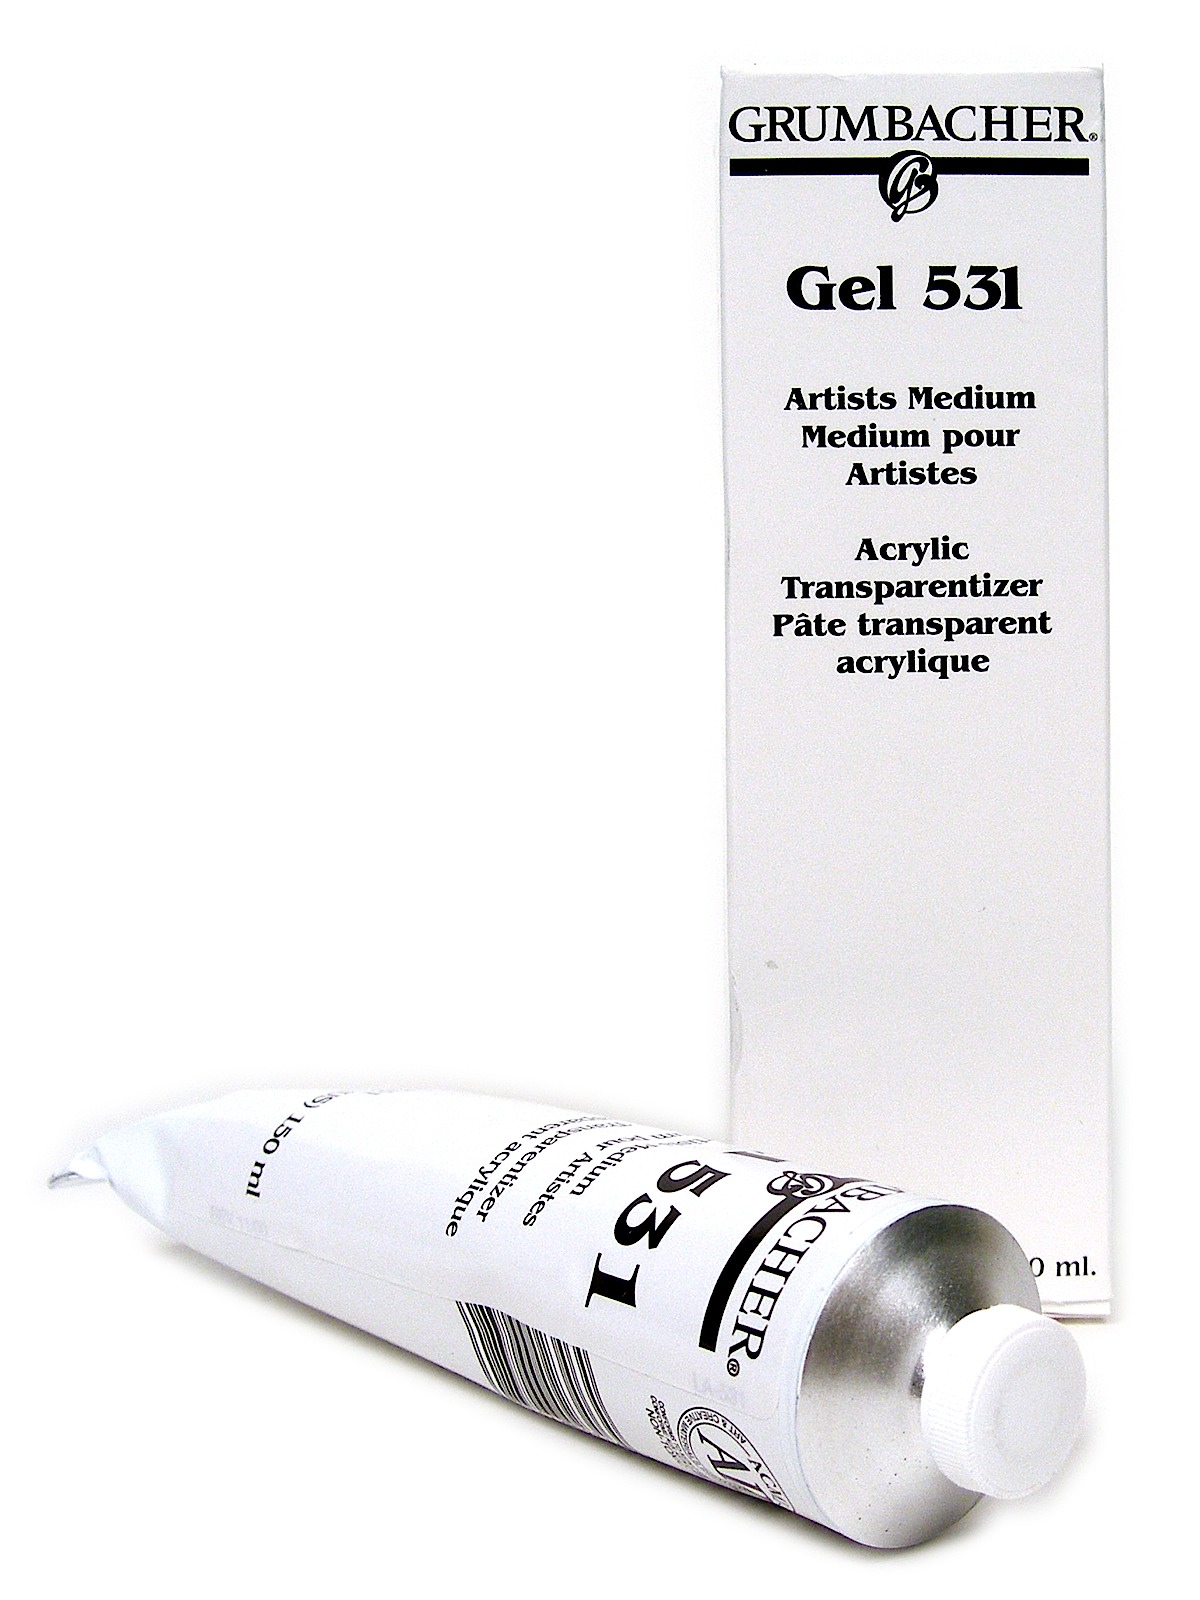 Grumbacher - Acrylic Gel 531 Acrylic Transparentizer